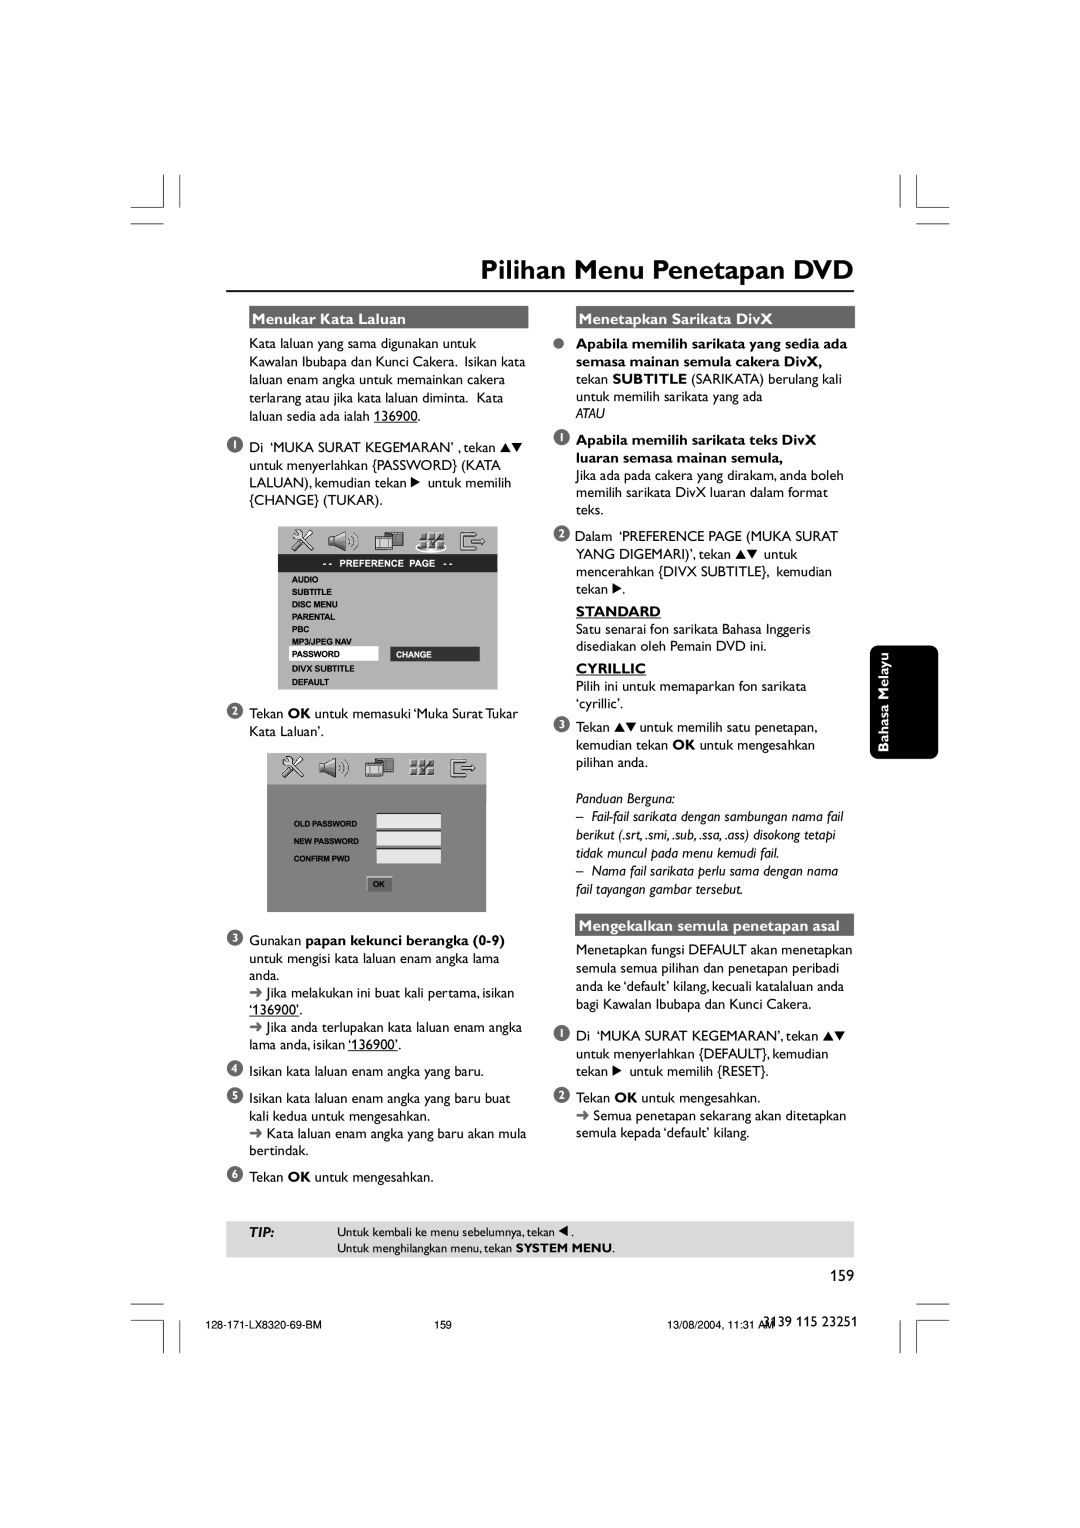 Philips LX8320SA Pilihan Menu Penetapan DVD, Menukar Kata Laluan, Menetapkan Sarikata DivX, Atau, Standard, Cyrillic 